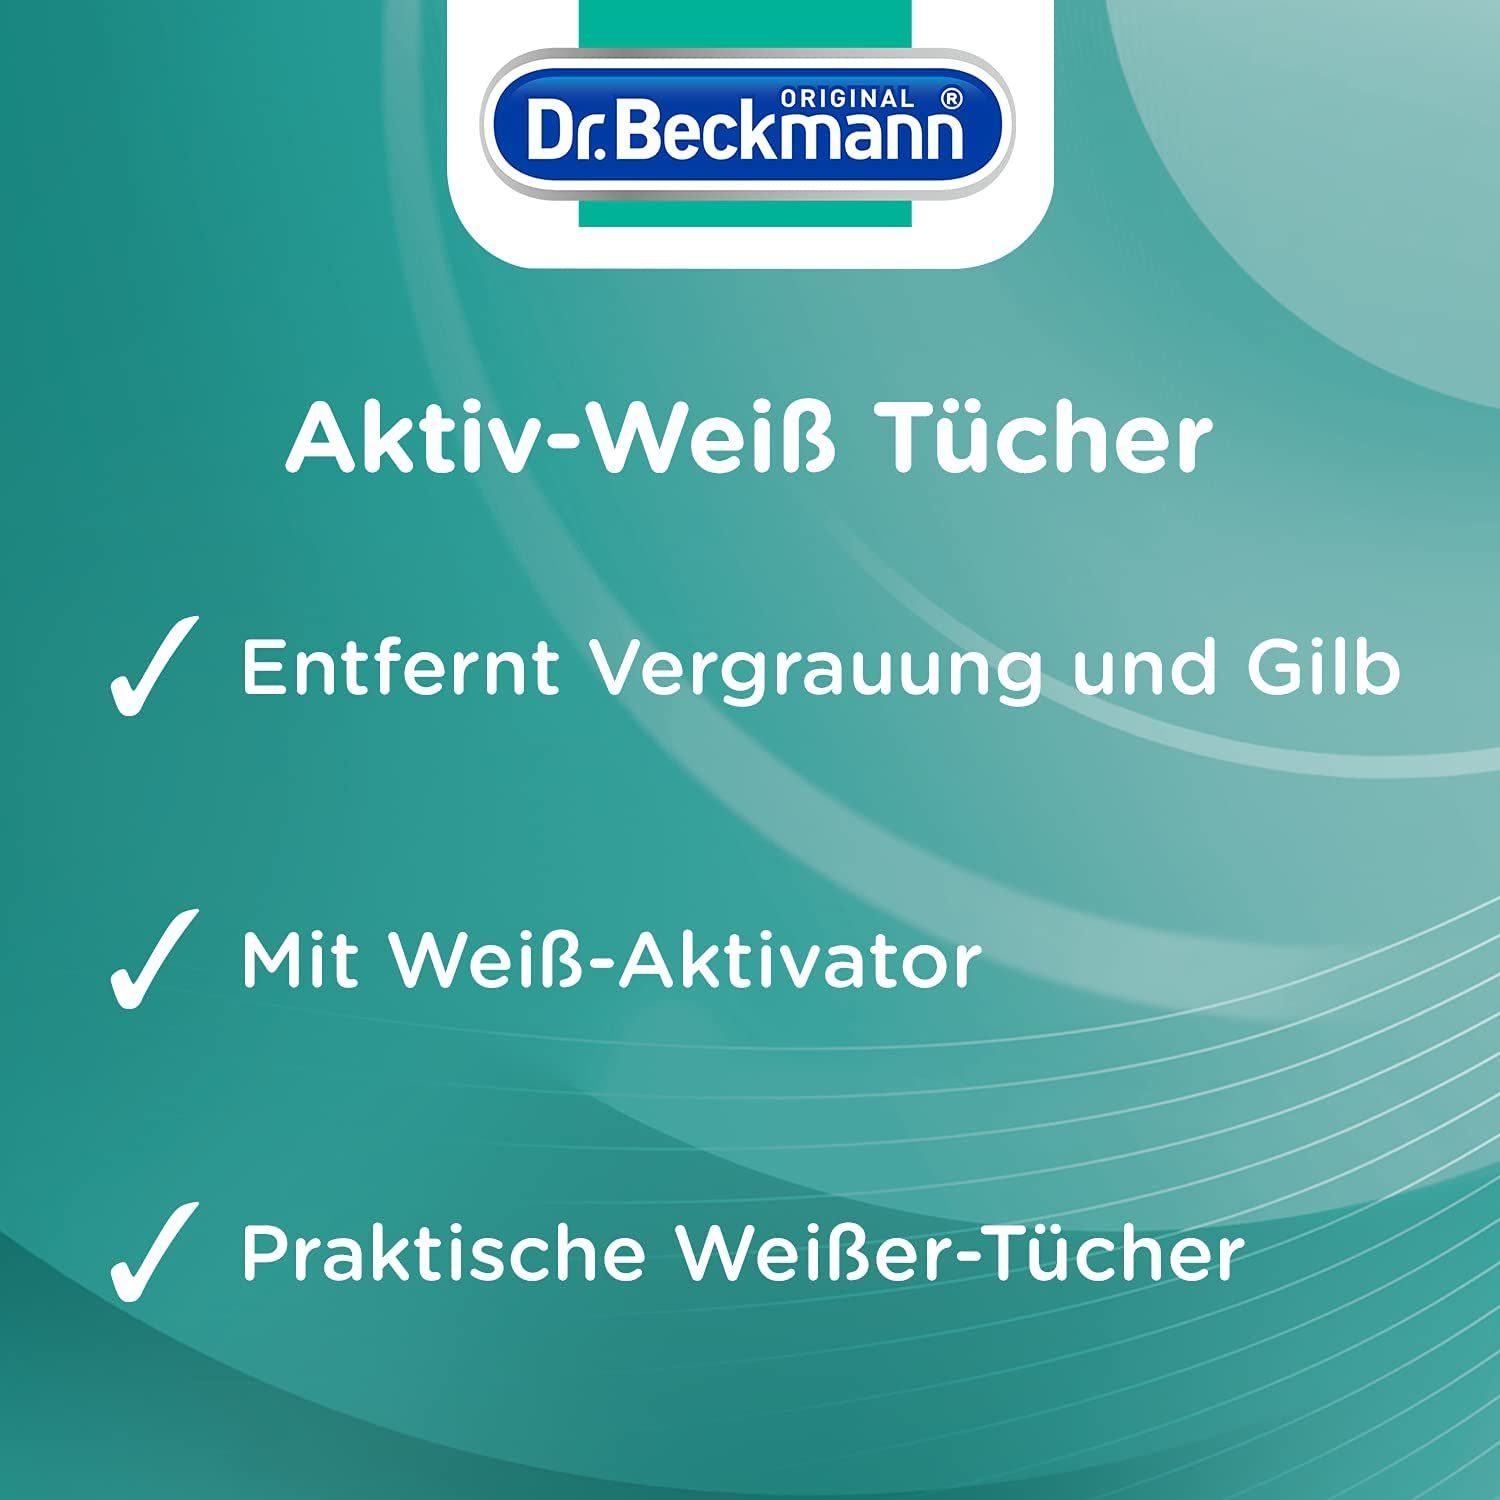 Dr. Beckmann Aktiv-Weiß Tücher, strahlendes 15 Tücher Weiß, Vergrauungen, Spezialwaschmittel (1-St) gegen